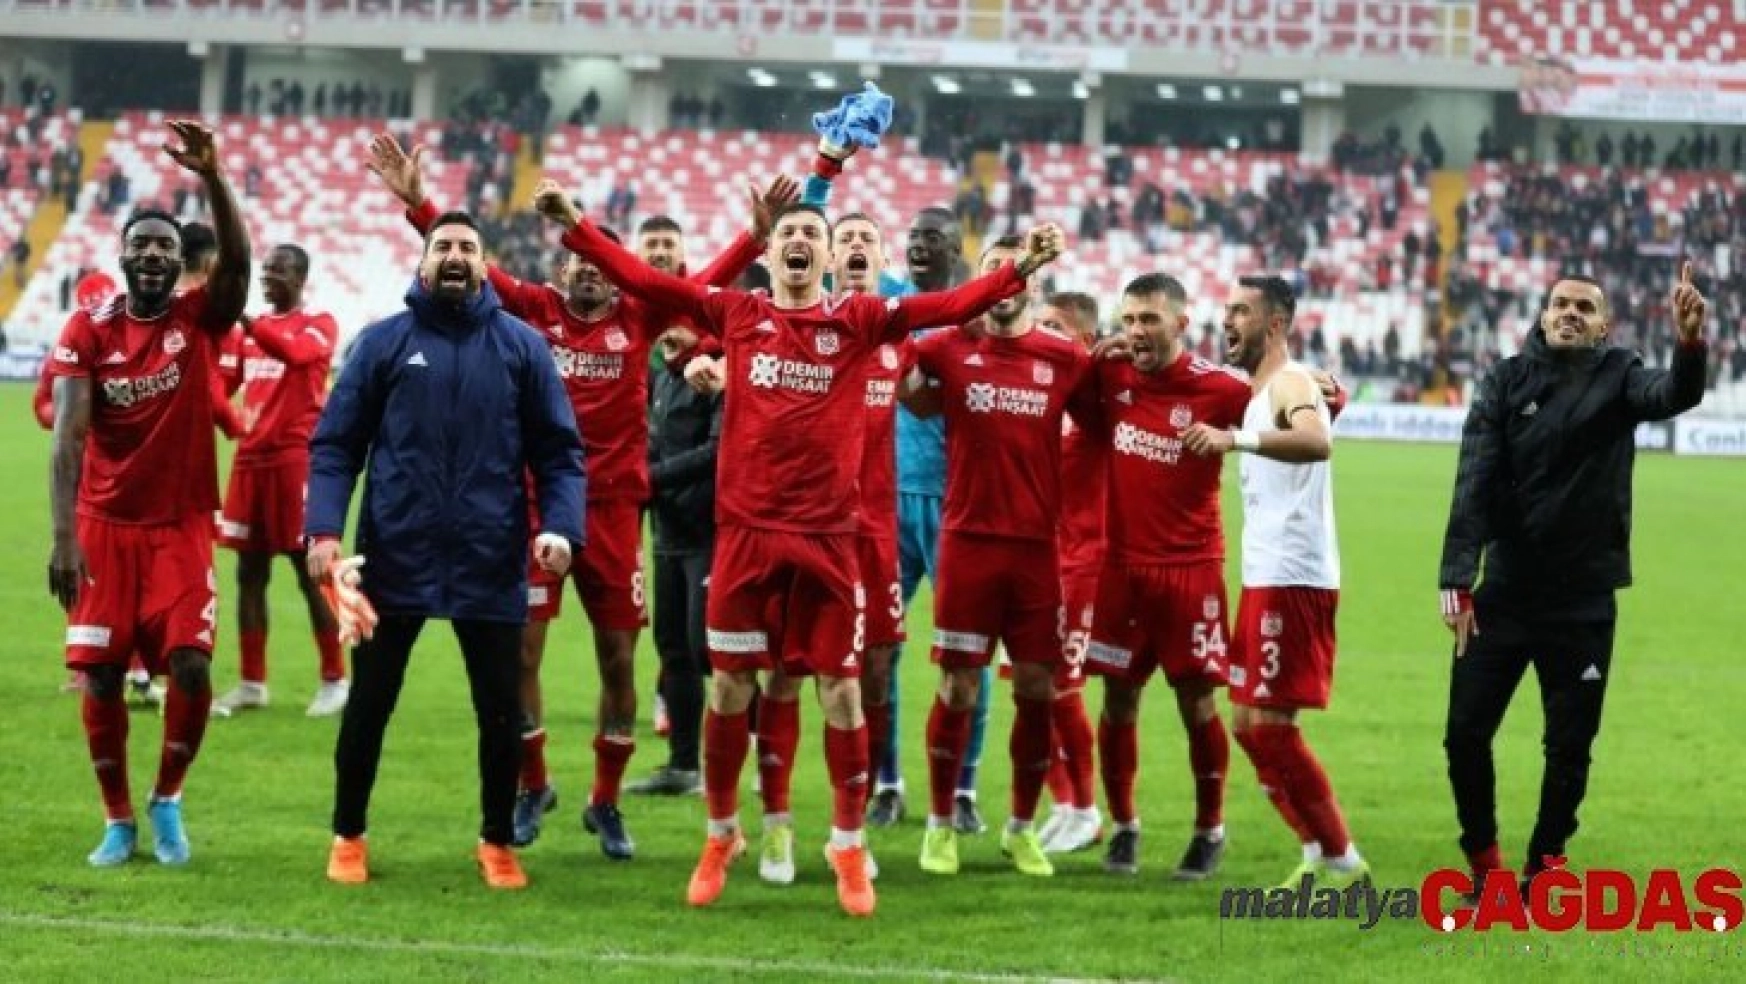 Evinde en başarılı takım Sivasspor